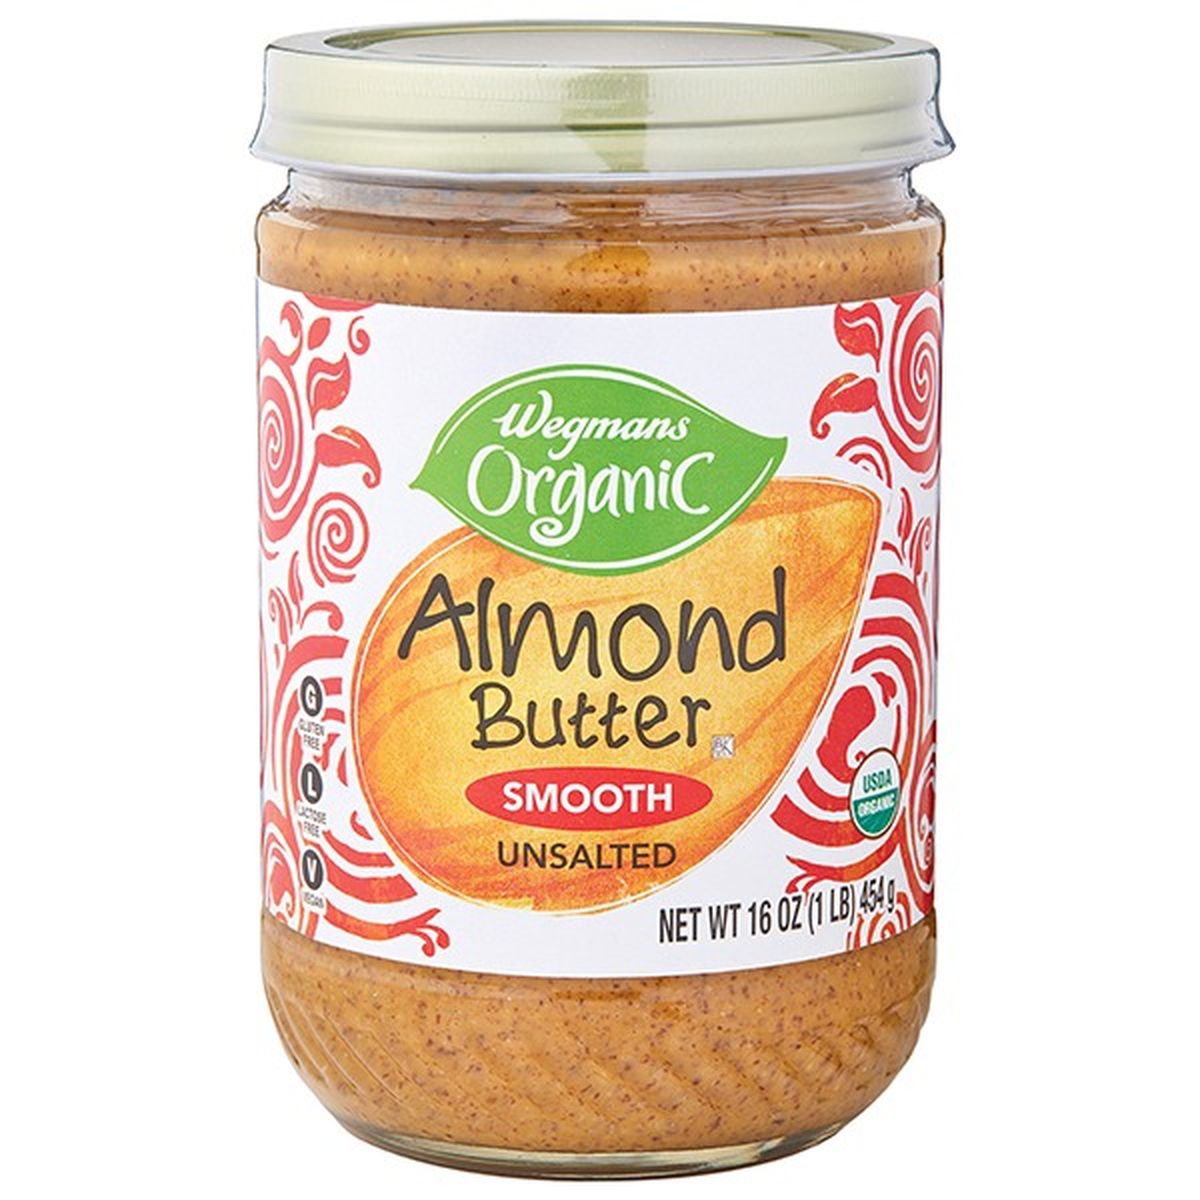 Calories in Wegmans Organic Stir Smooth Almond Butter